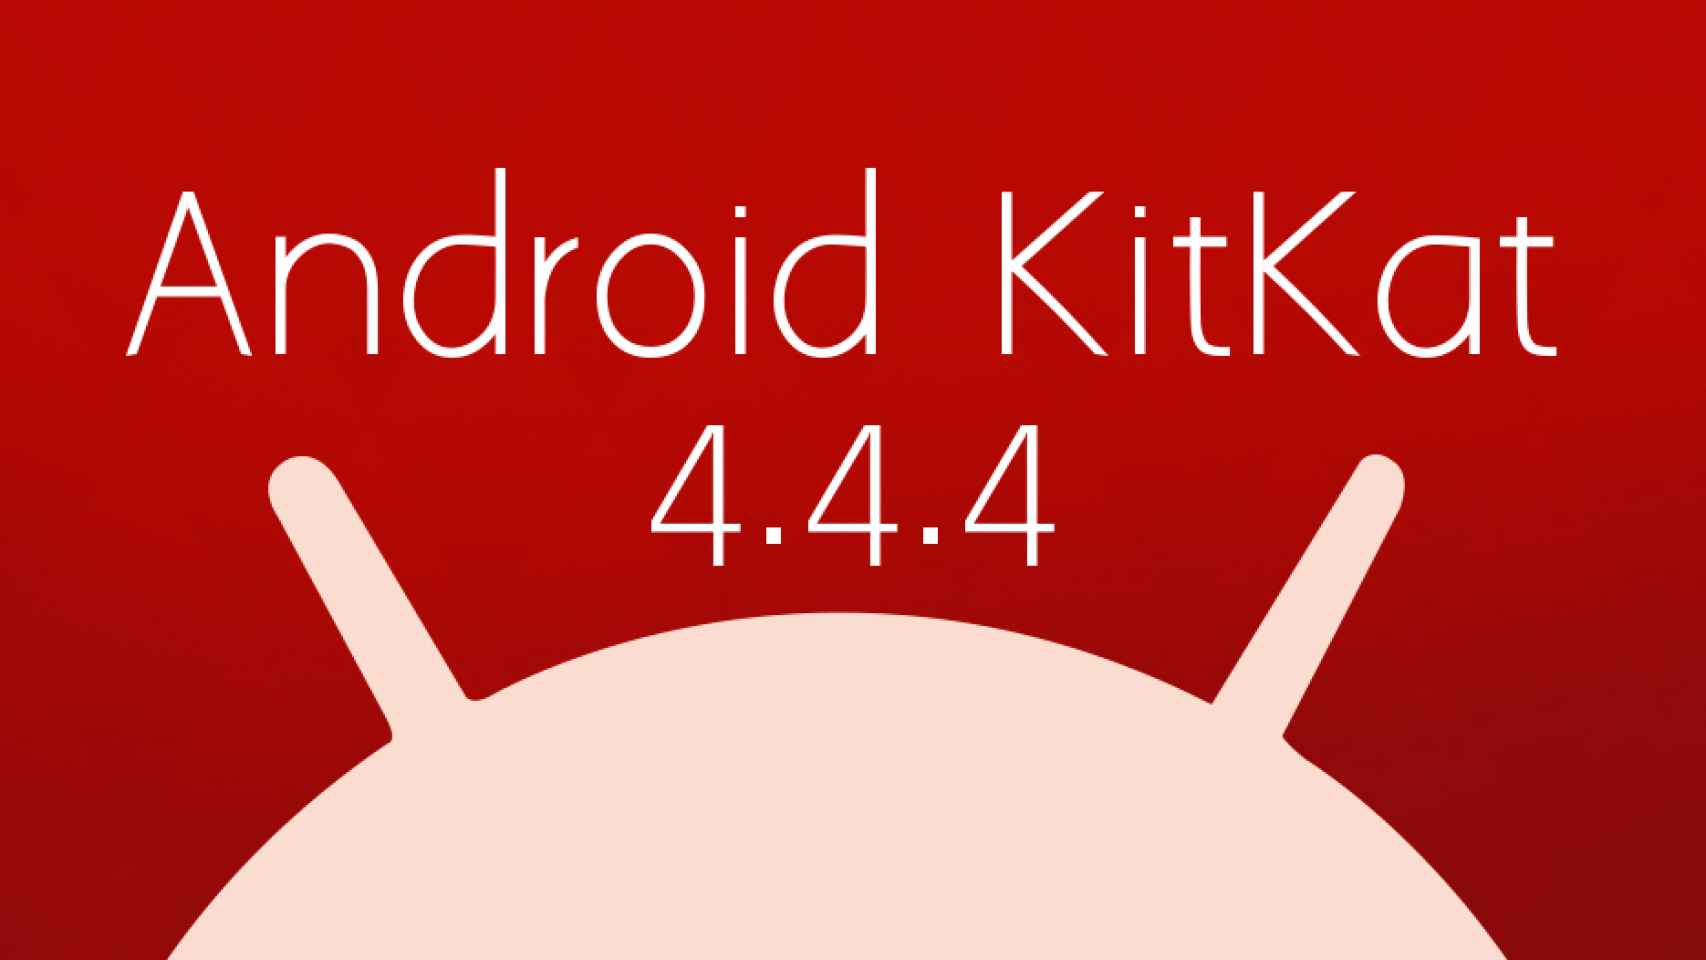 Android 4.4.4 KitKat, toda la información: Changelog, ROMs, OTAs y más